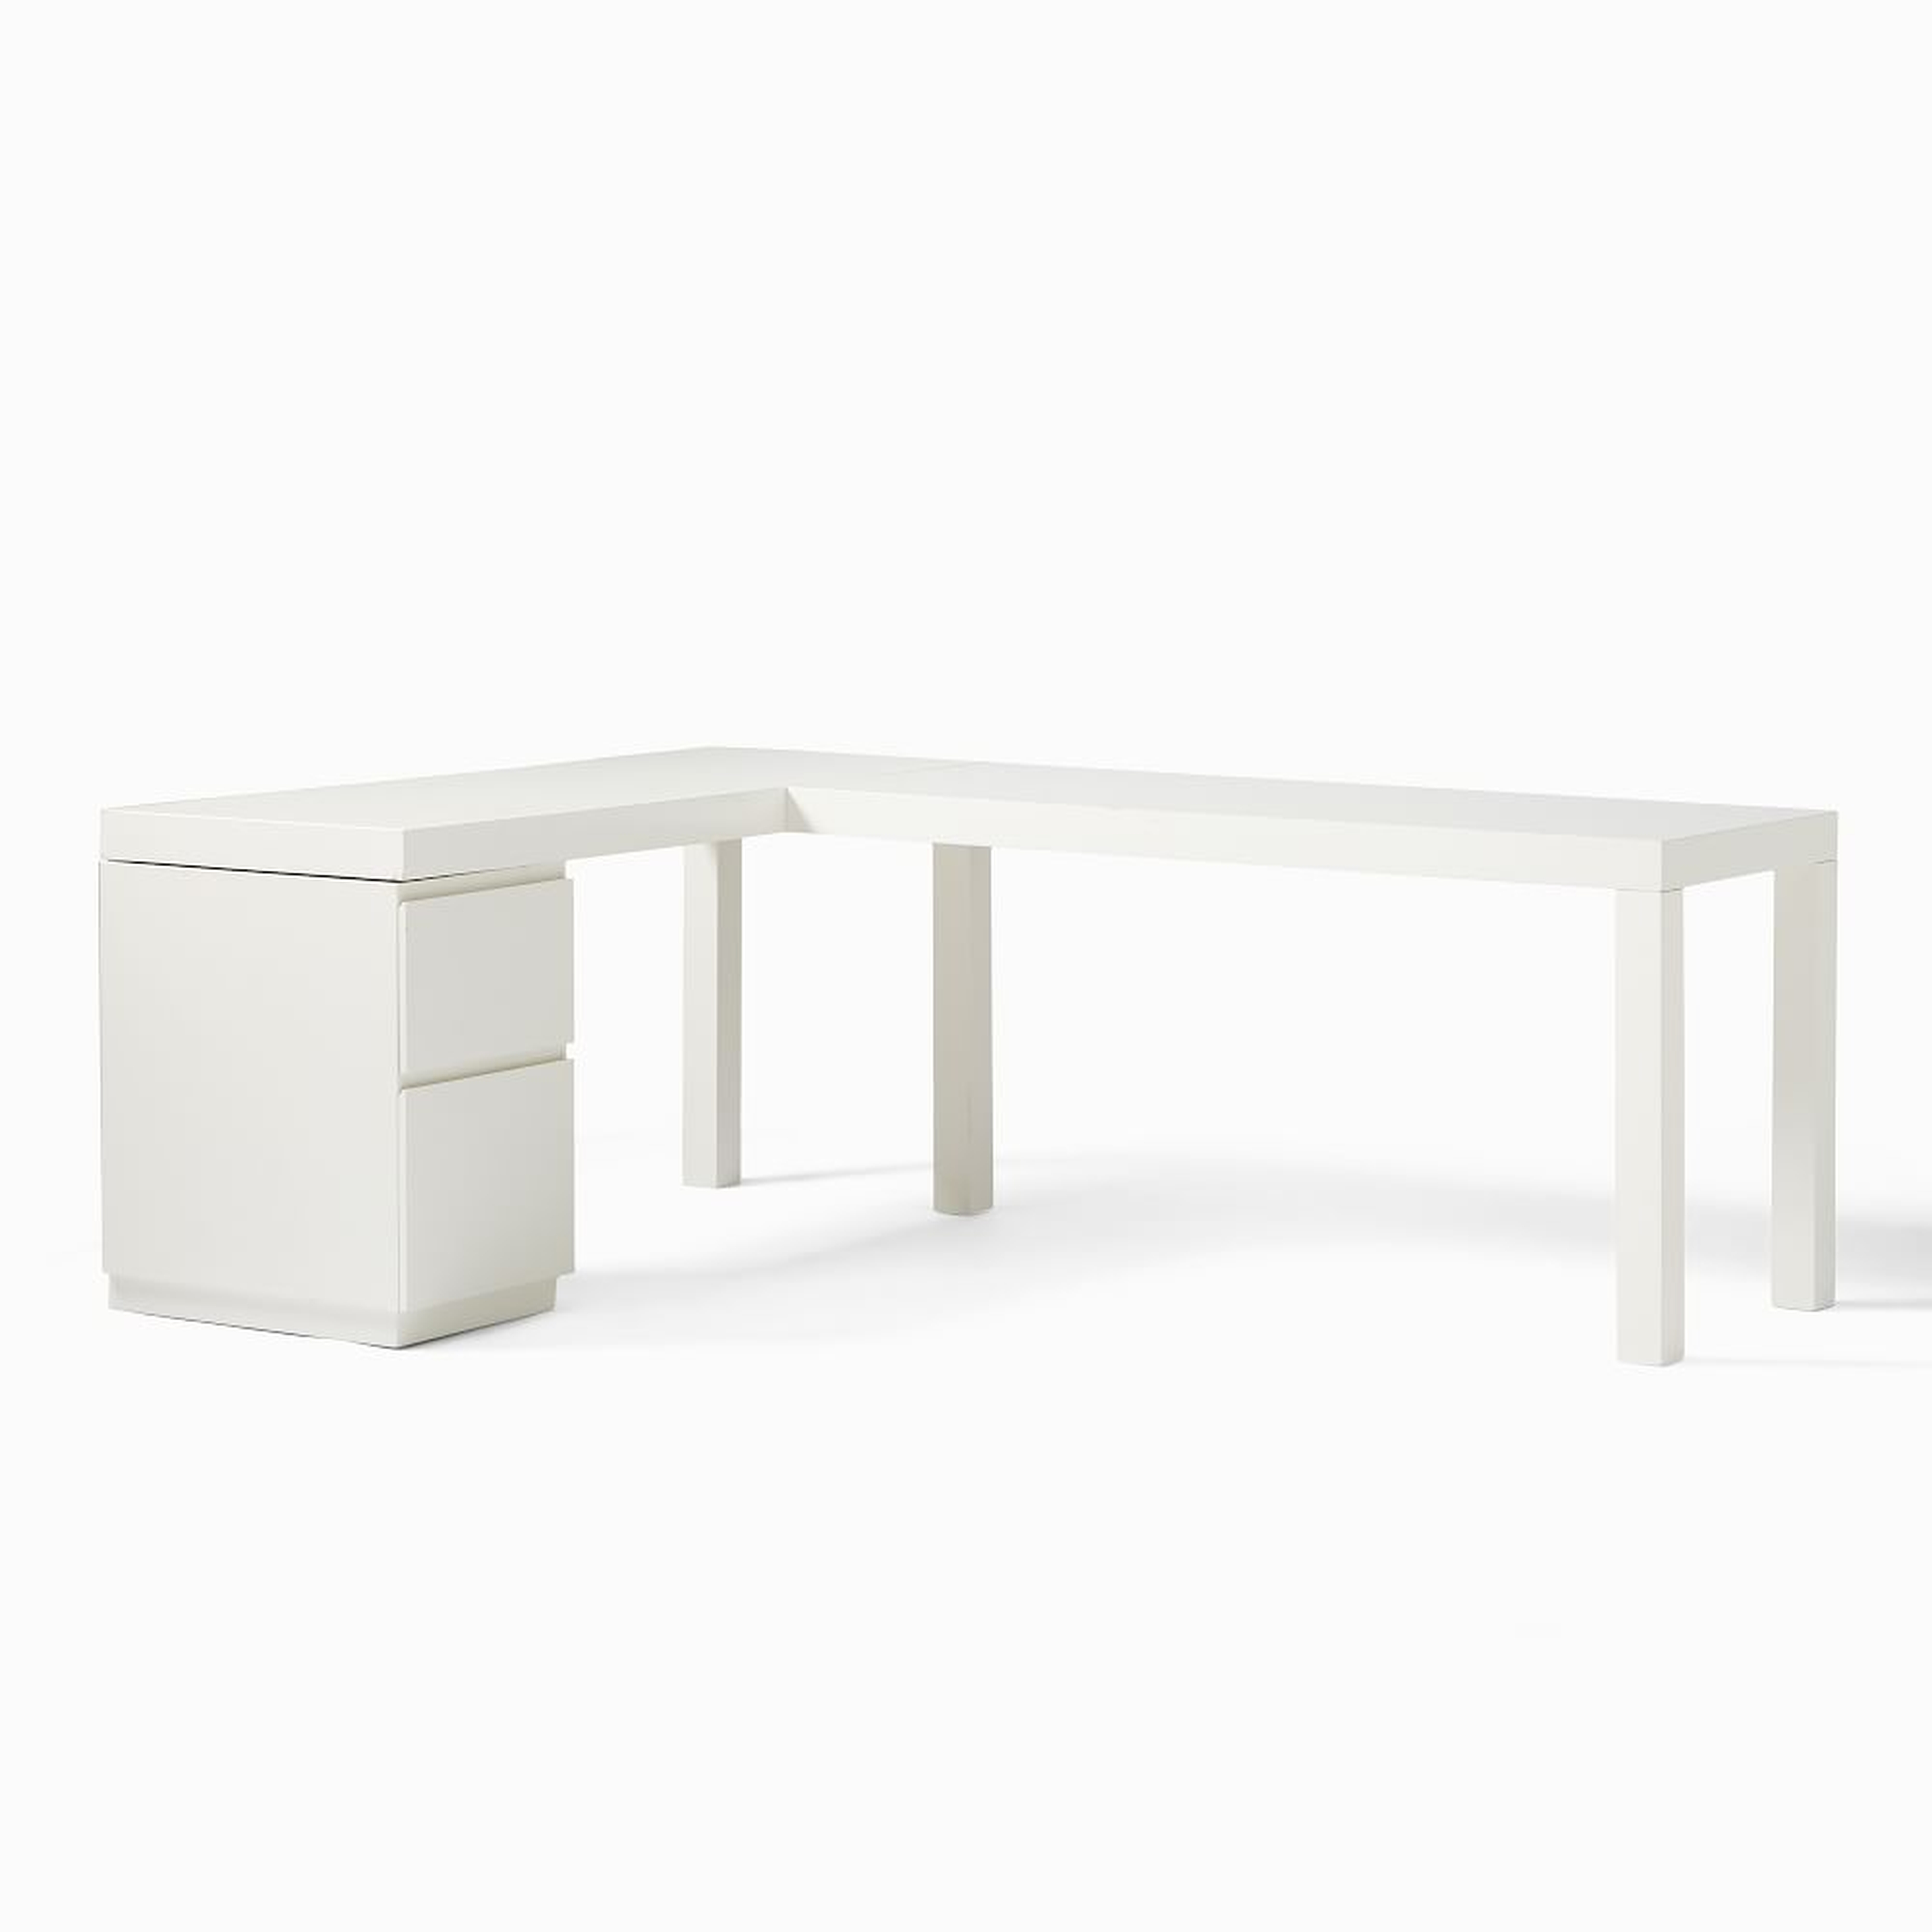 Parsons L-Shaped Desk + File Cabinet Set, White - West Elm